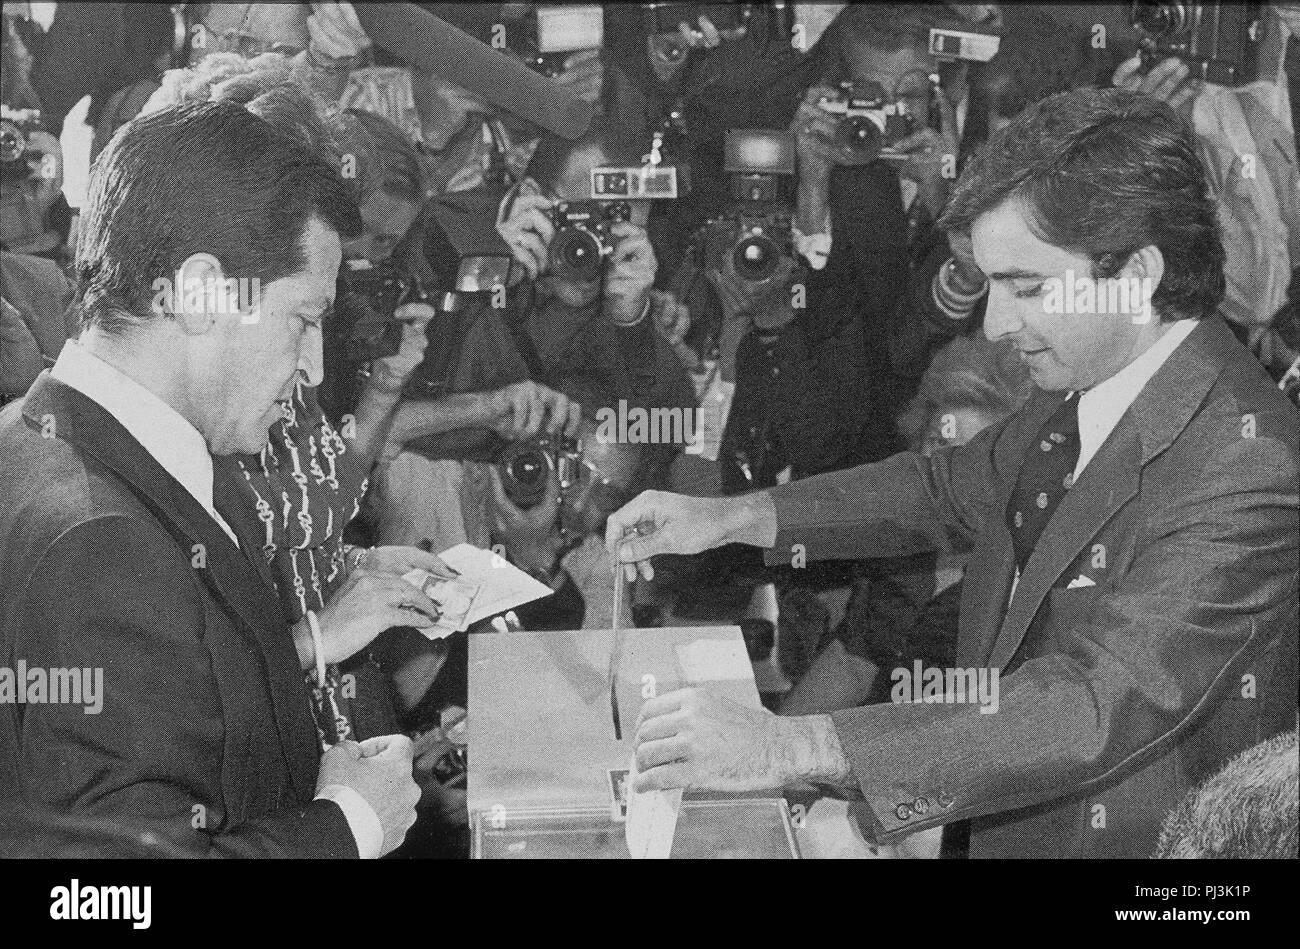 ADOLFO SUAREZ EJERCIENDO SU DERECHO AL VOTO EN LAS PRIMERAS ELECCIONES DEMOCRATICAS DESDE LA SEGUNDA REPUBLICA, JUNIO DE 1977. Stock Photo